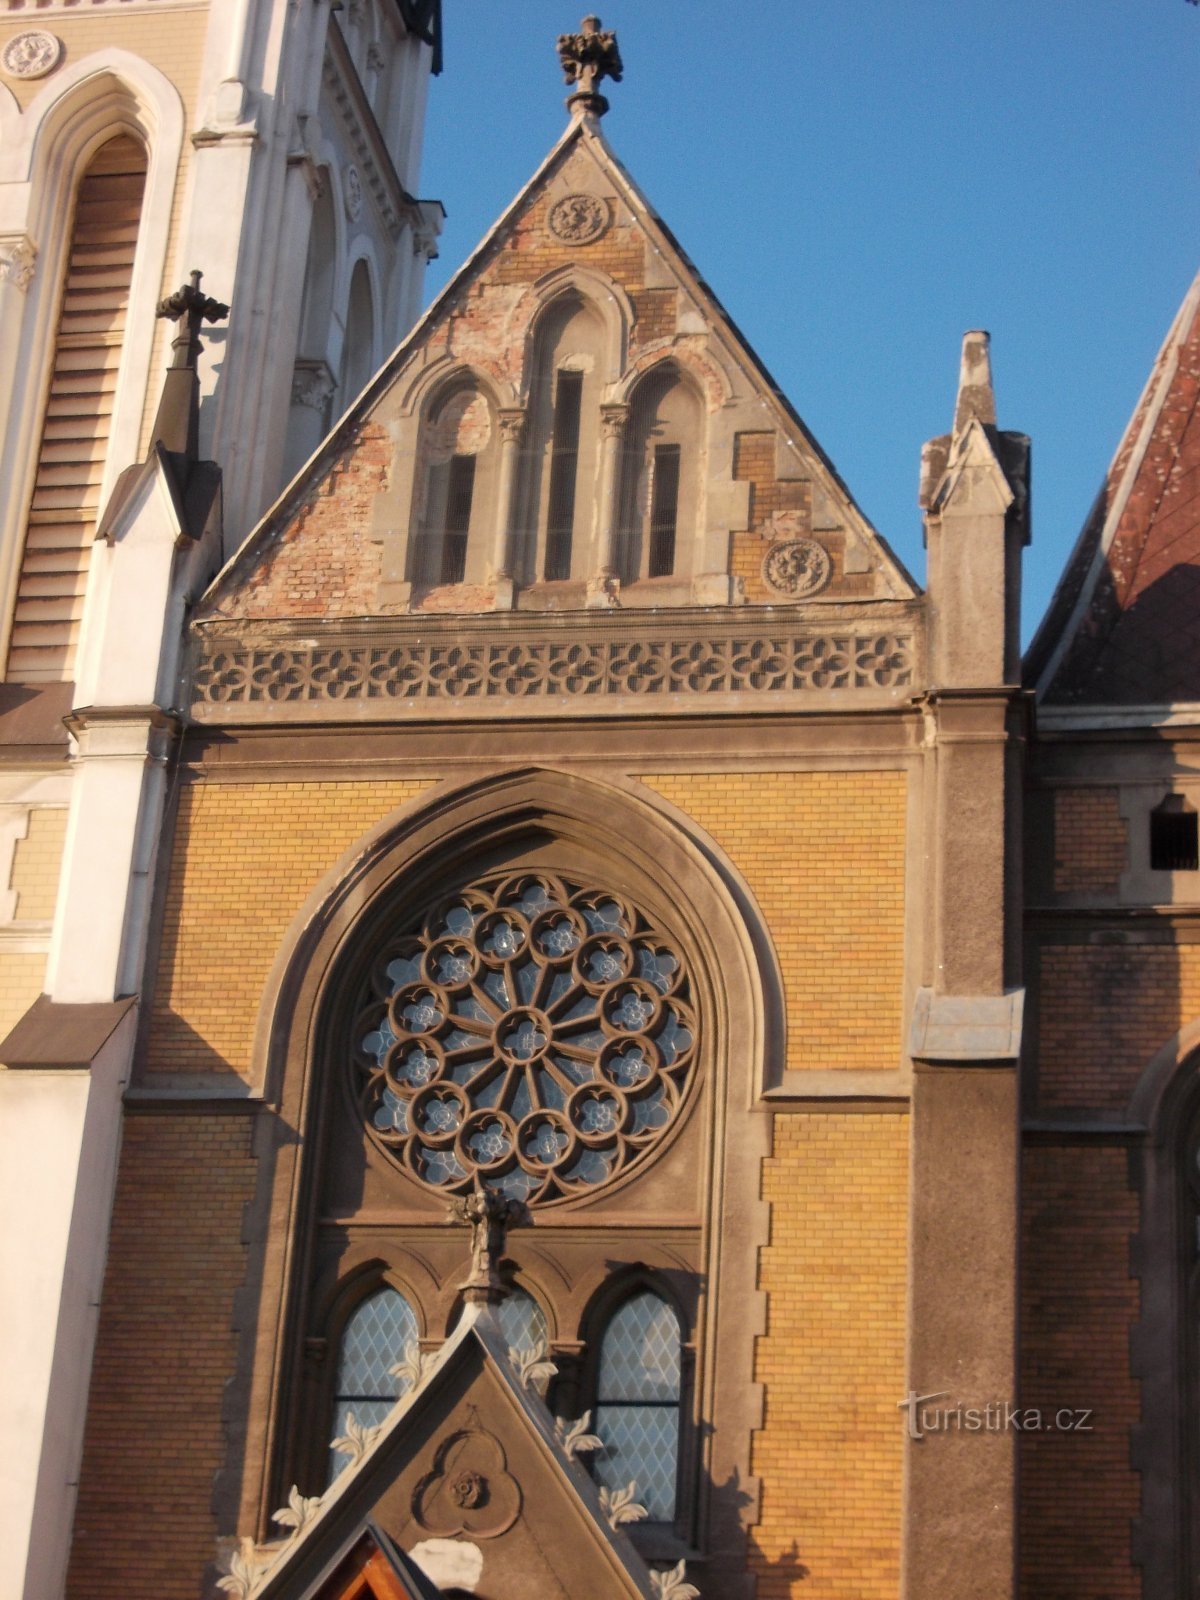 facade of the church